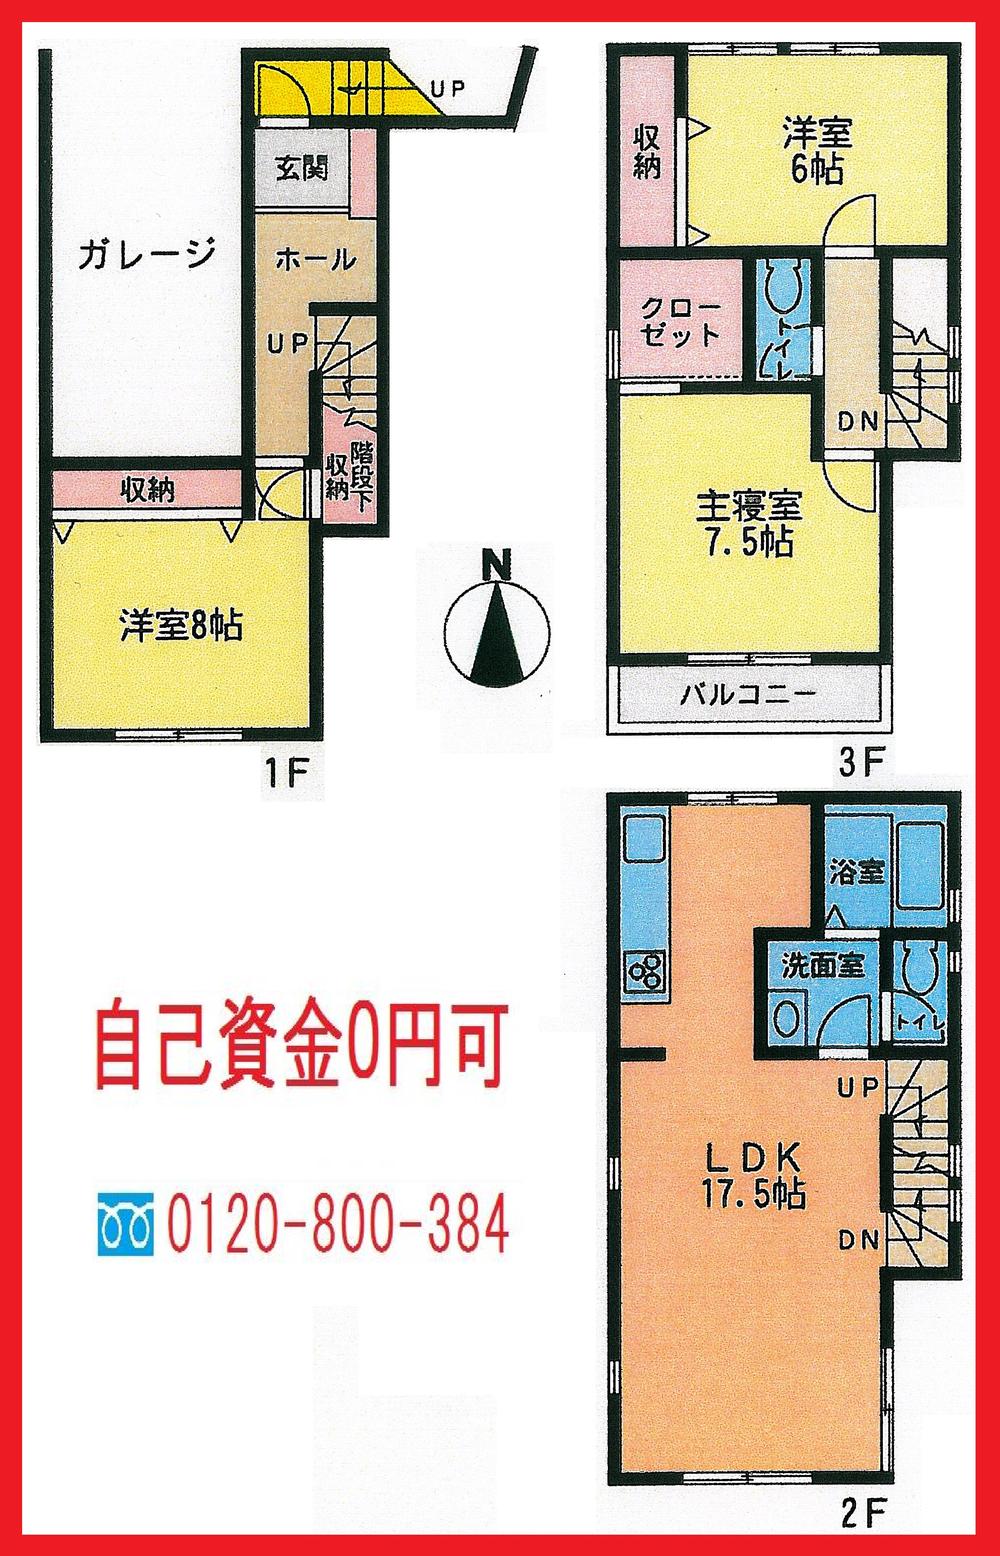 Floor plan. 29,800,000 yen, 3LDK + S (storeroom), Land area 74.32 sq m , Building area 112.62 sq m